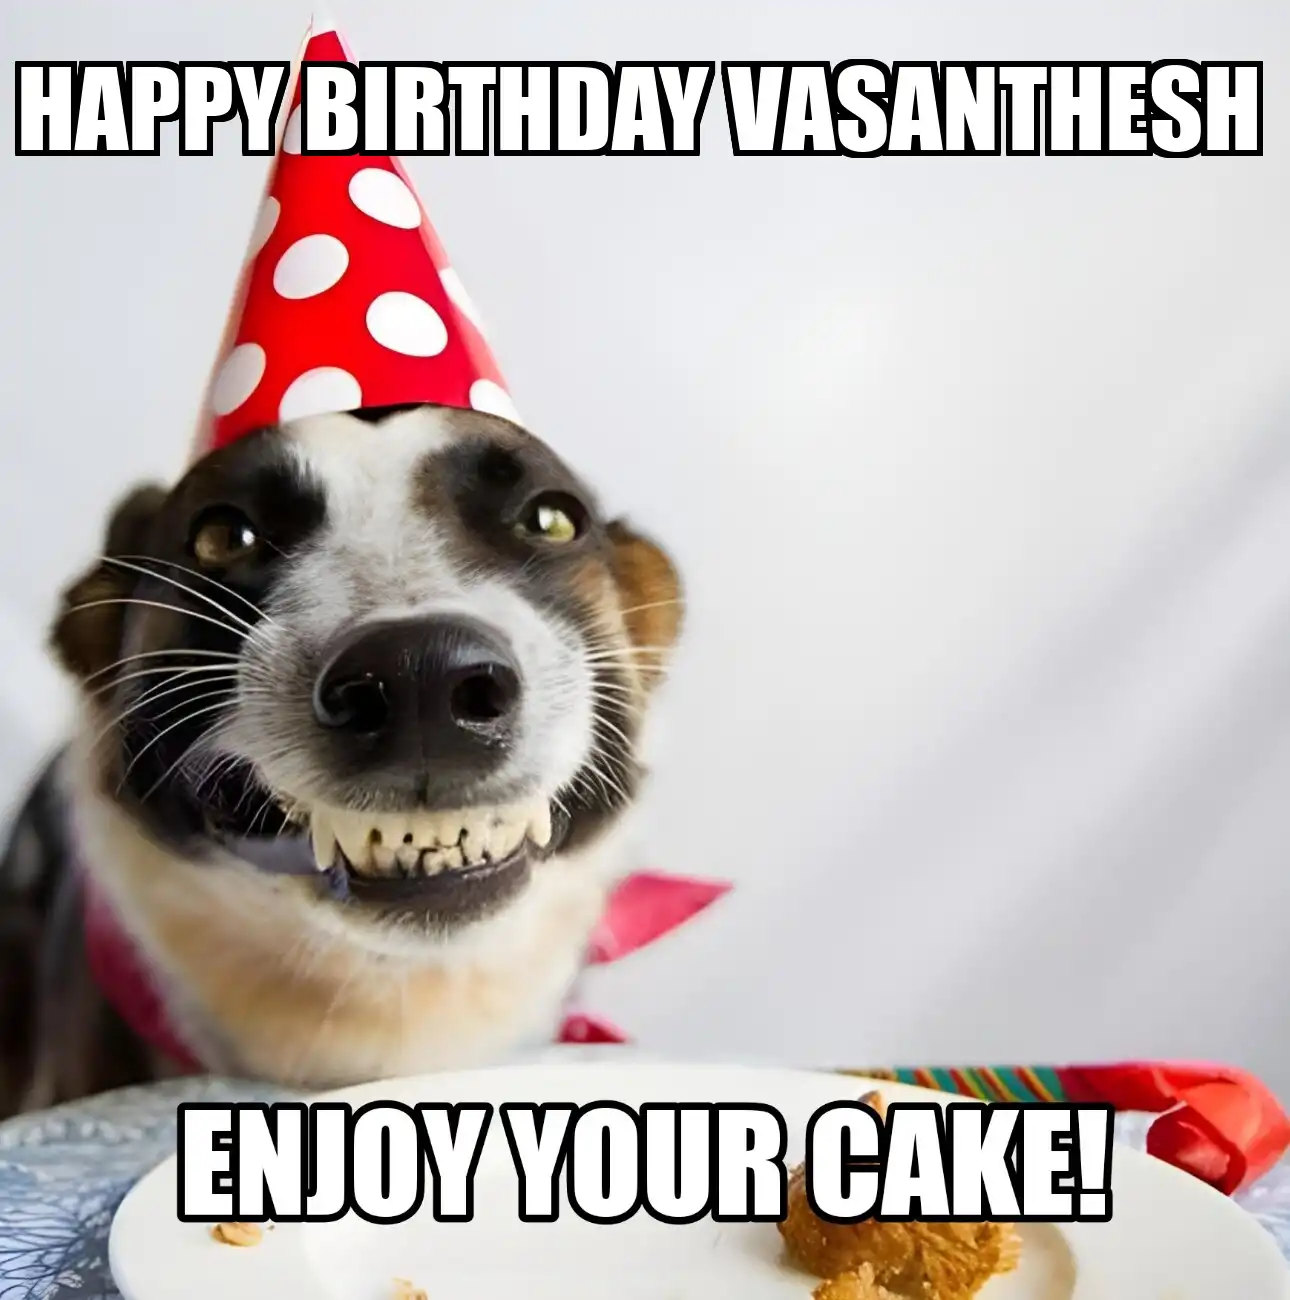 Happy Birthday Vasanthesh Enjoy Your Cake Dog Meme